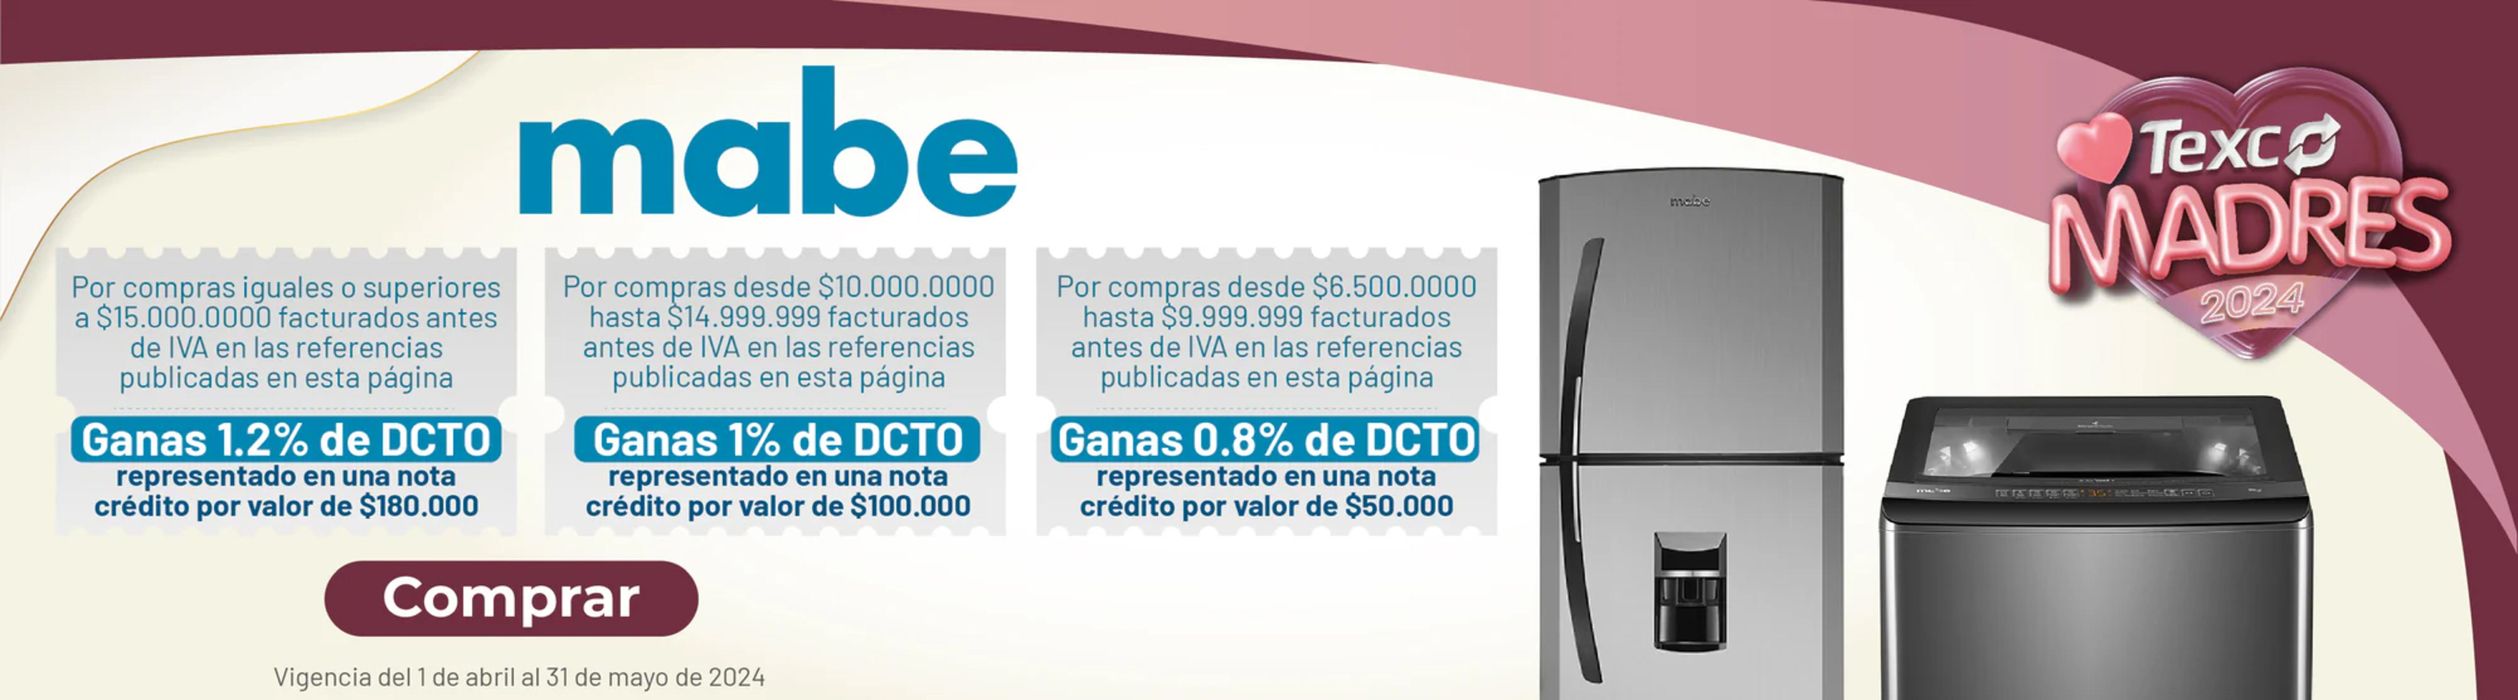 Catálogo Texco Comercial en Cúcuta | Texco madres 2024 | 30/4/2024 - 31/5/2024